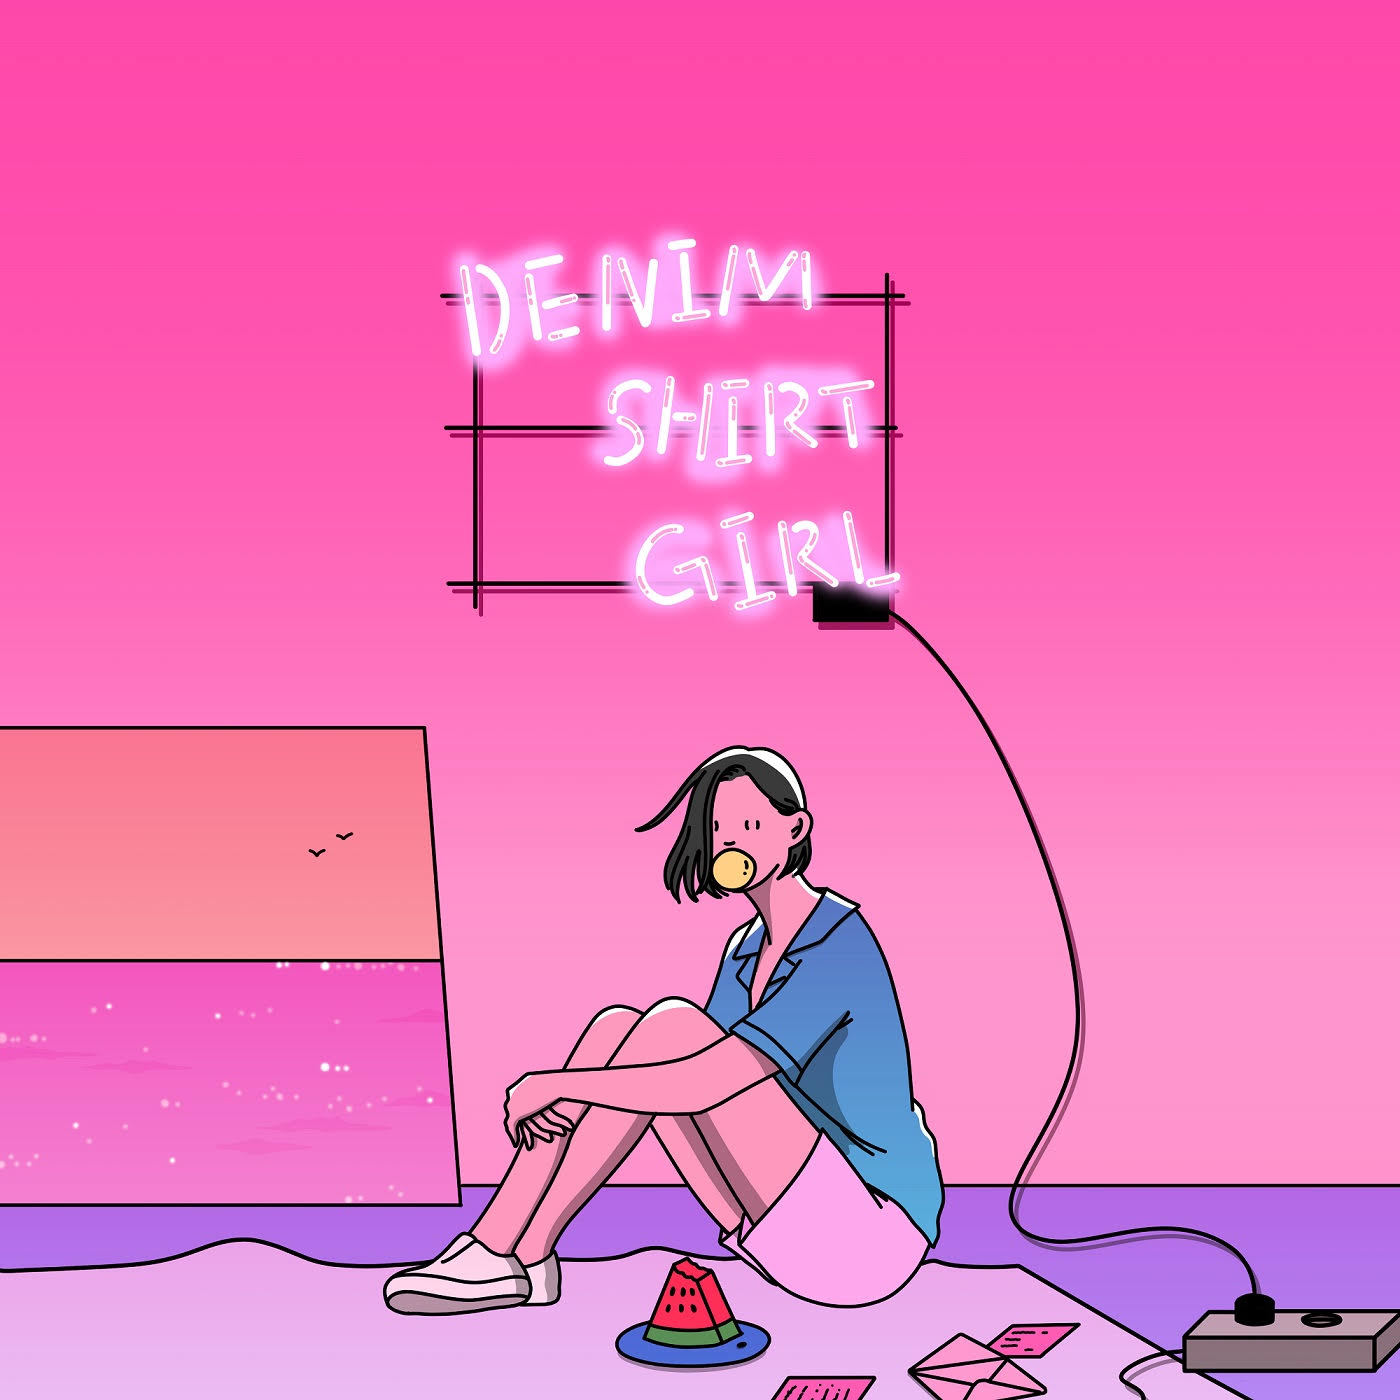 大橋ちっぽけ ミニアルバム Denim Shirt Girl の詳細を発表 ジャケットは韓国のイラストレーター Shim Morae シンモレ とコラボレーション Spice エンタメ特化型情報メディア スパイス